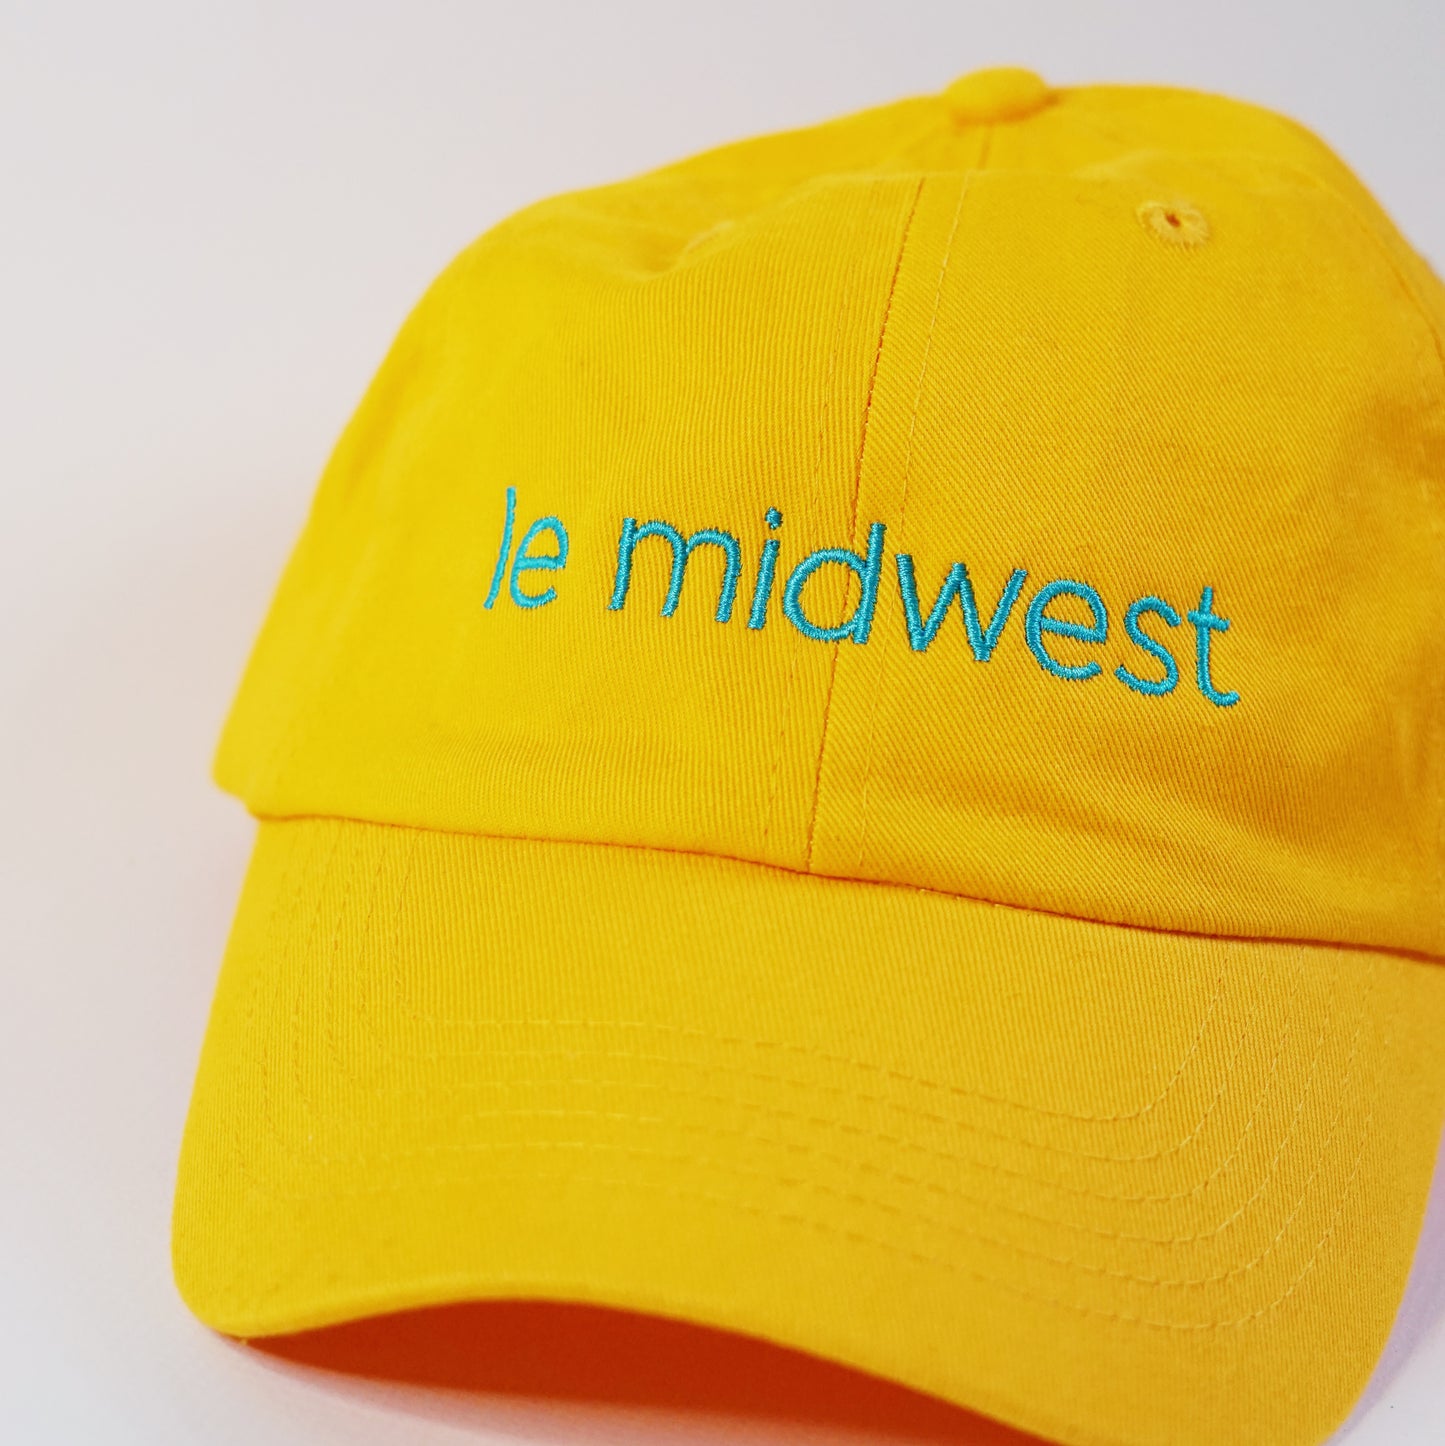 Le Midwest Hat